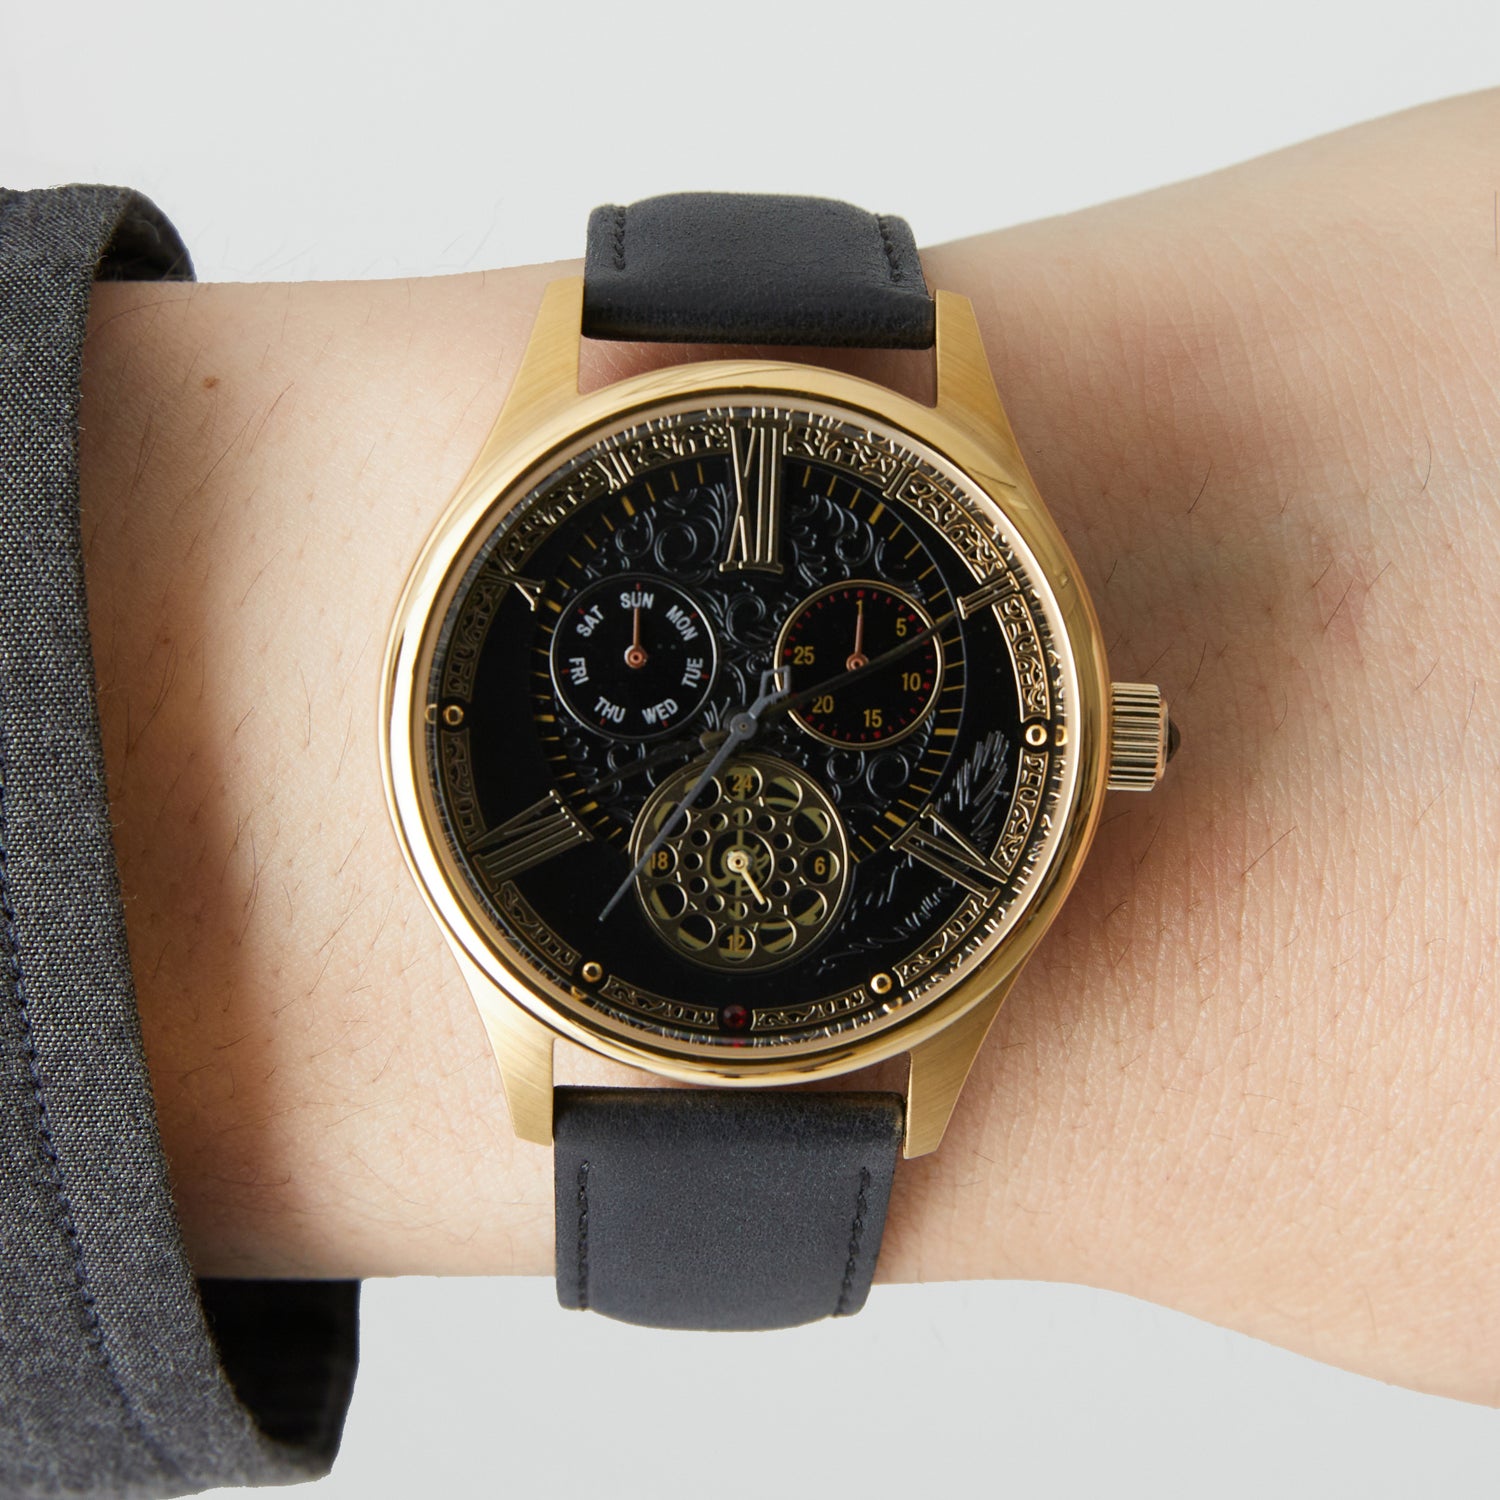 12,997円時計塔のマリア モデル 腕時計 Bloodborne